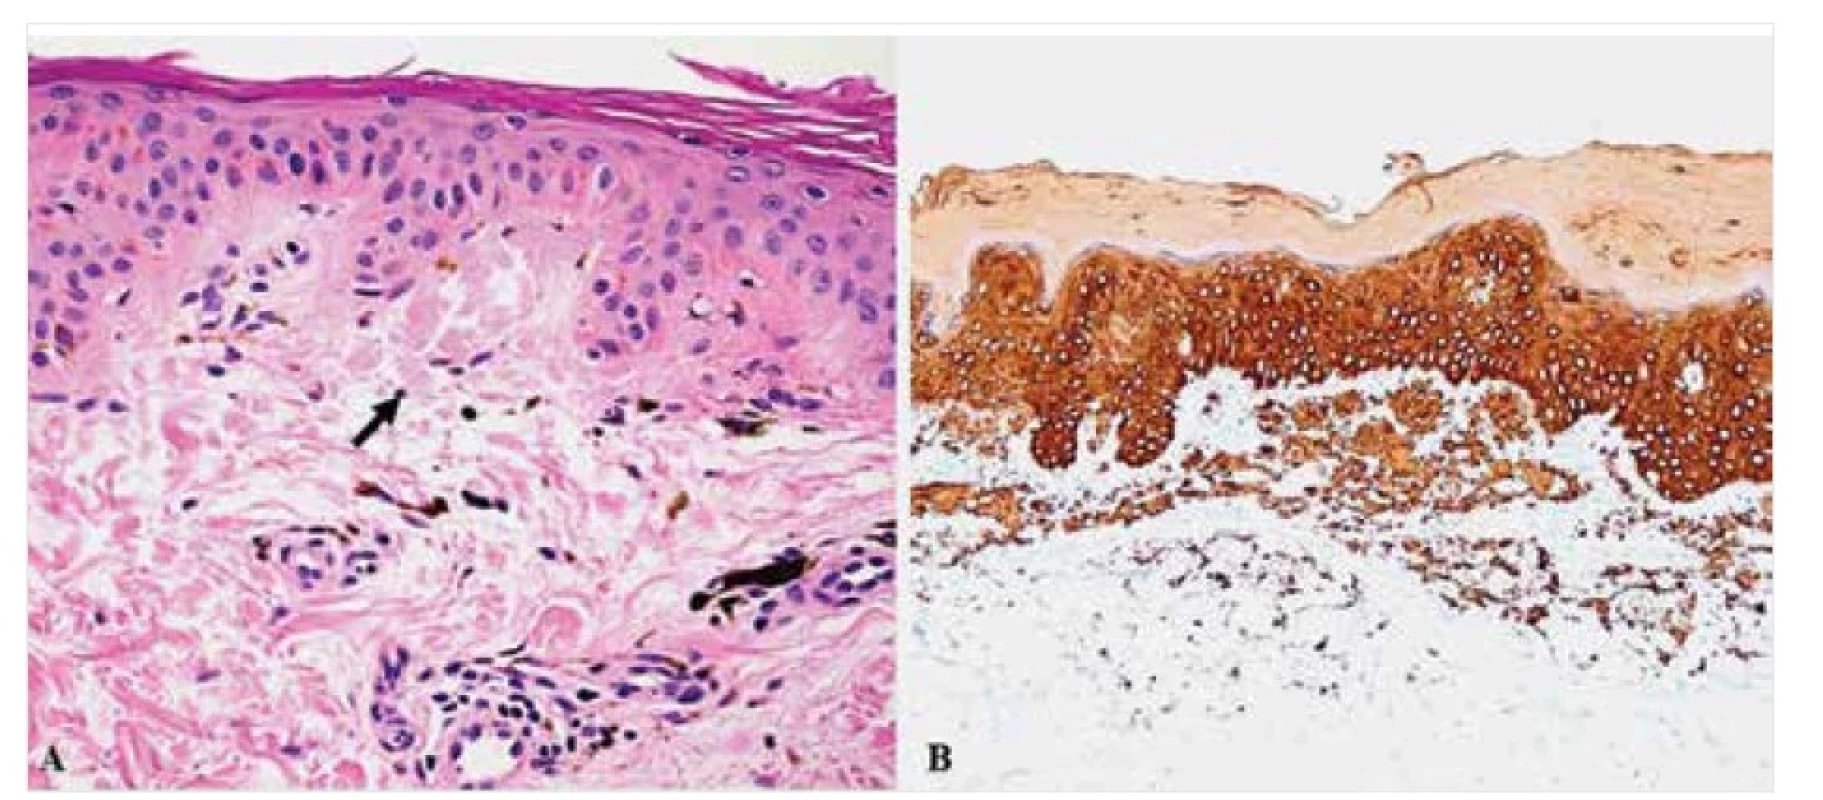 Makulózní amyloidóza – histopatologie<br>
Drobná amorfní depozita amyloidu v papilární dermis (šipka) v barvení HE (A), pozitivní v imunohistochemických
reakcích s primární protilátkou proti HMWCK (B). Původní zvětšení 400krát (A) a 100krát (B).